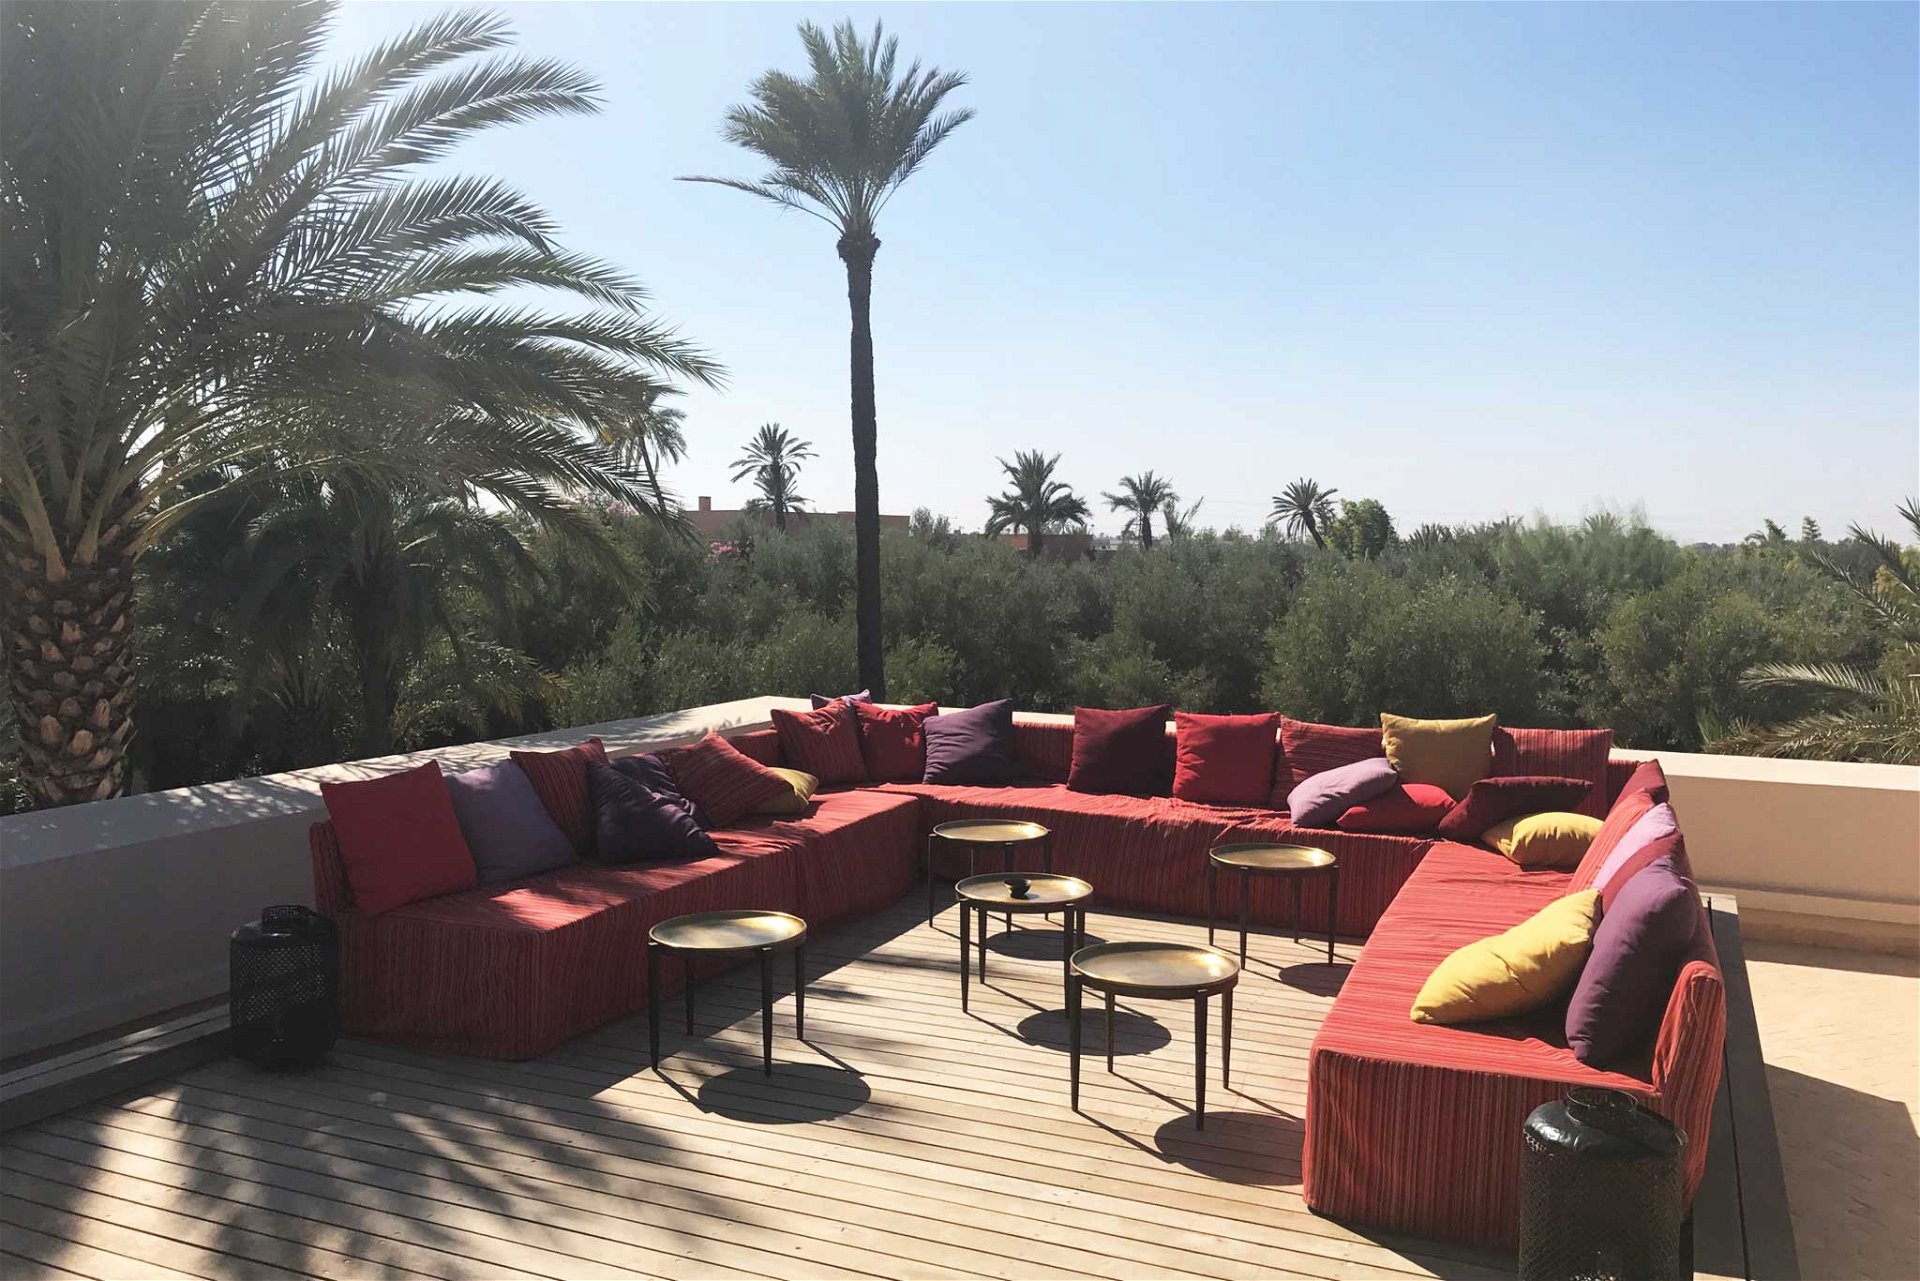 Der Ausblick von der privaten »Villa Serout Jenna« in Marrakesch. 